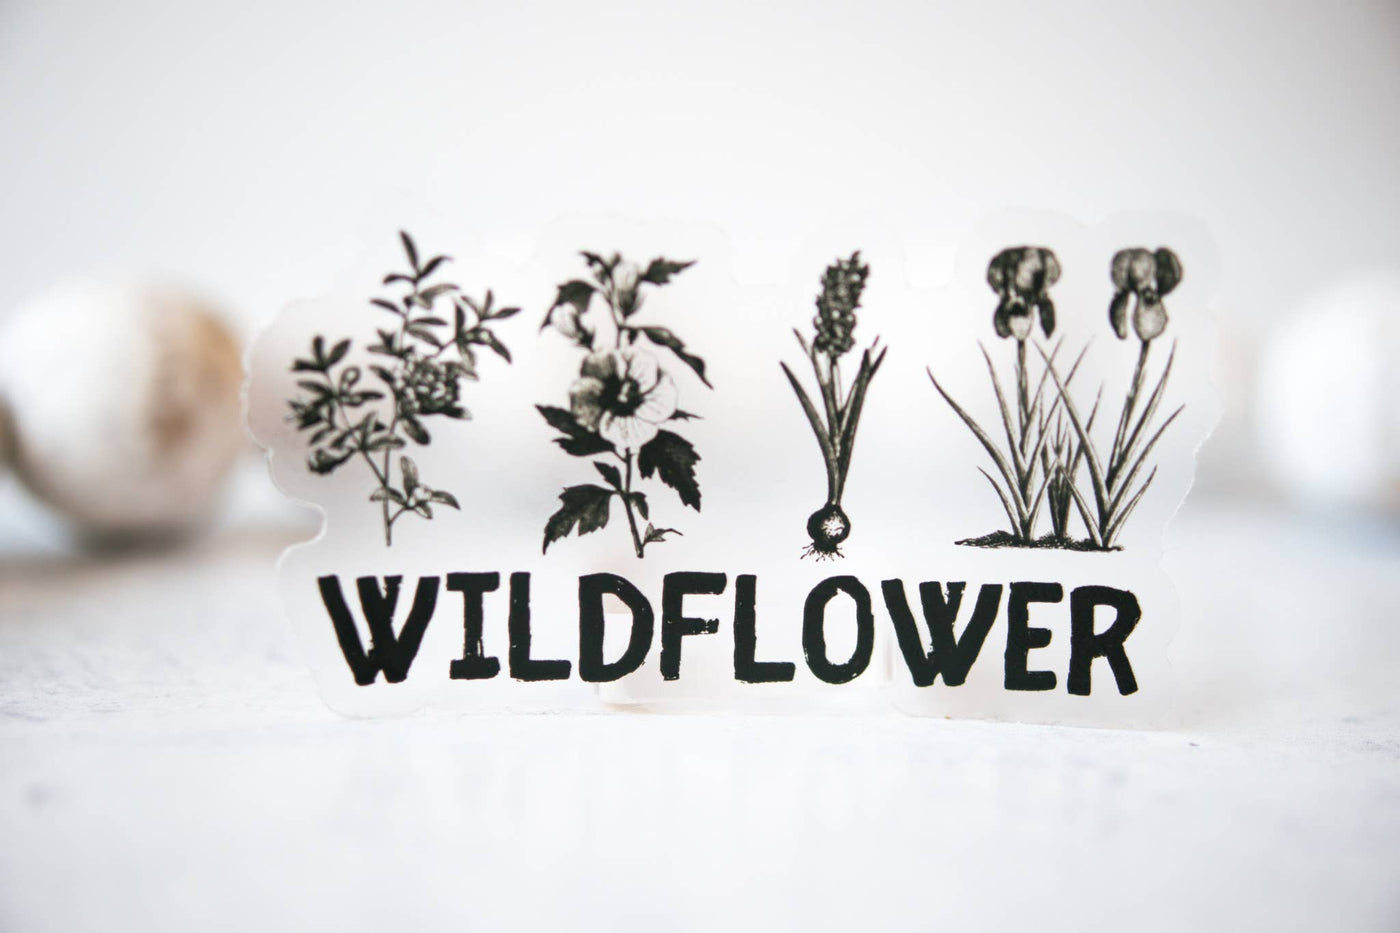 Wildflower Clear Vinyl Sticker, 3"